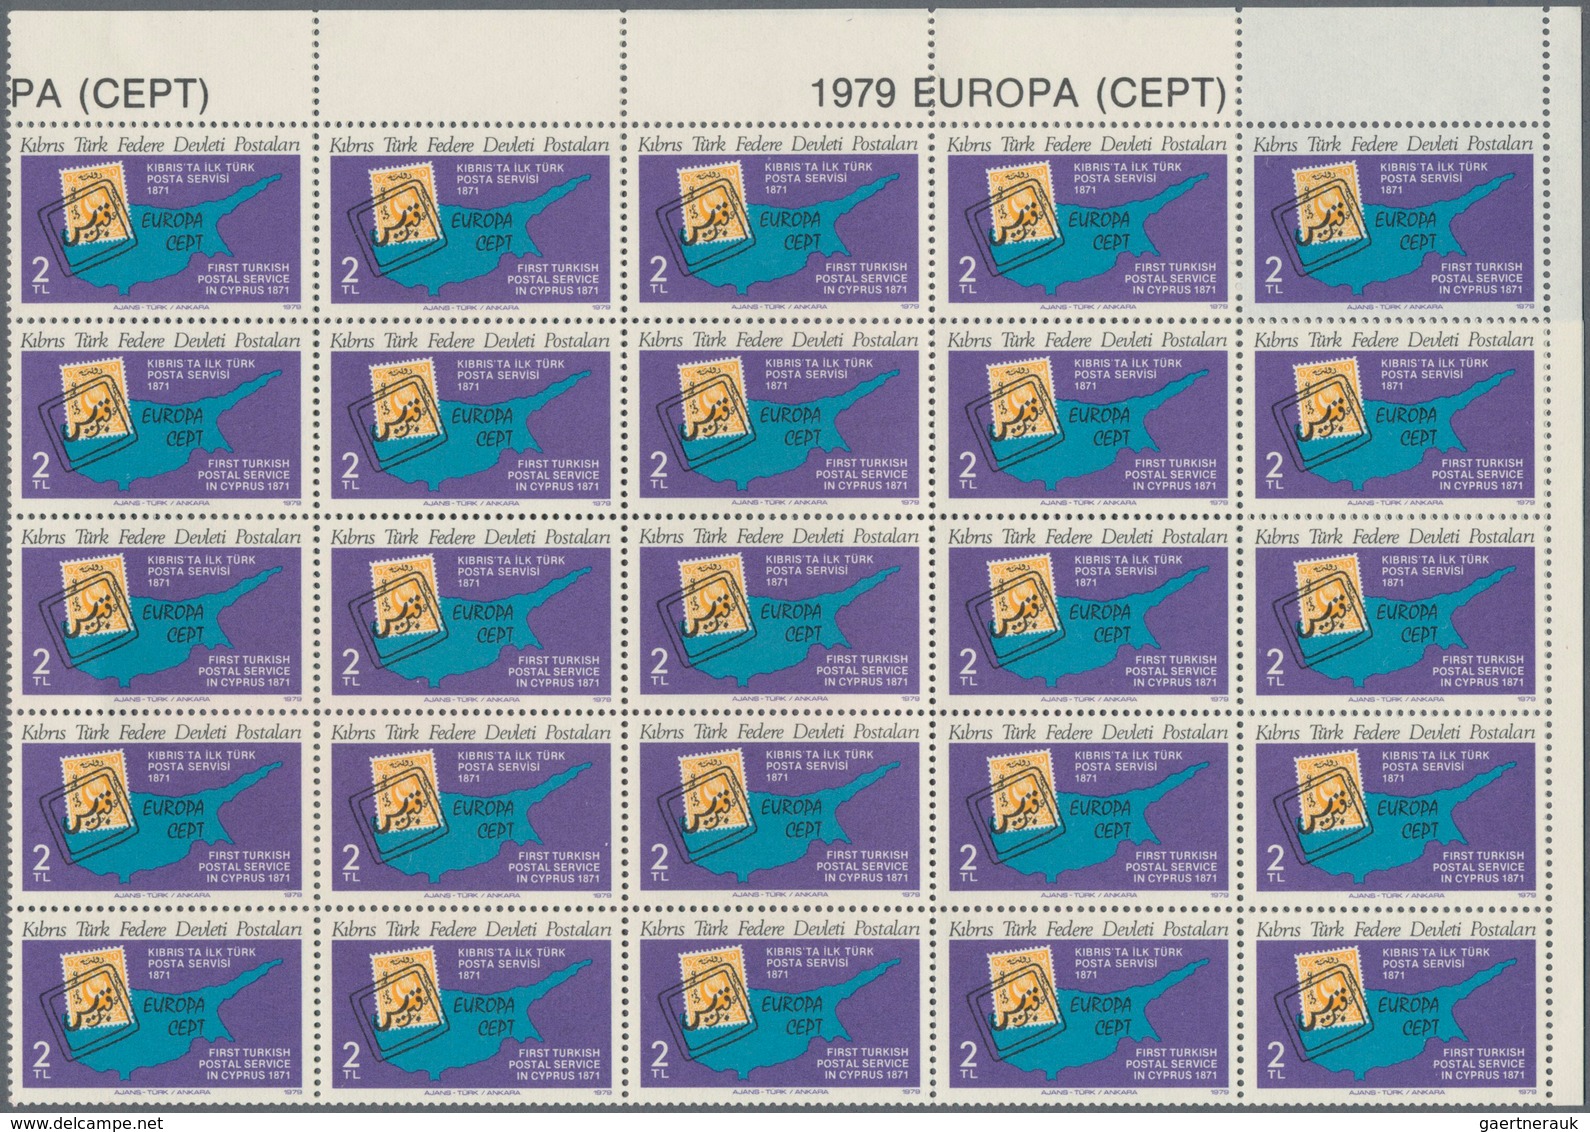 Thematik: Marke Auf Marke / Stamp On Stamp: 1979, Europa CEPT Stamps Of Faroe Islands And Northern C - Briefmarken Auf Briefmarken